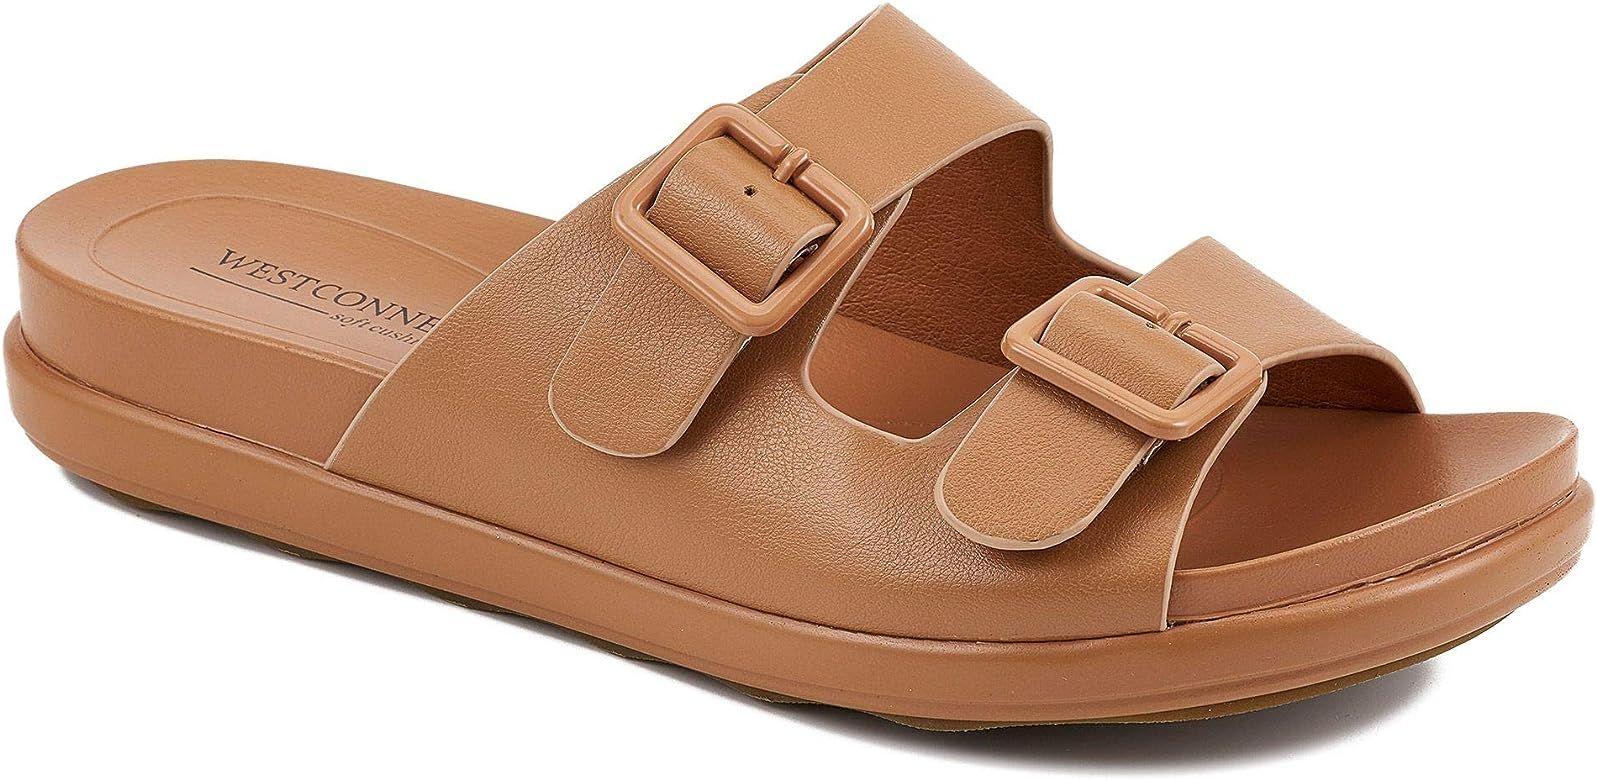 Women's Summer Comfort Flat Slide Sandals with Adjustable Buckle | Amazon (US)